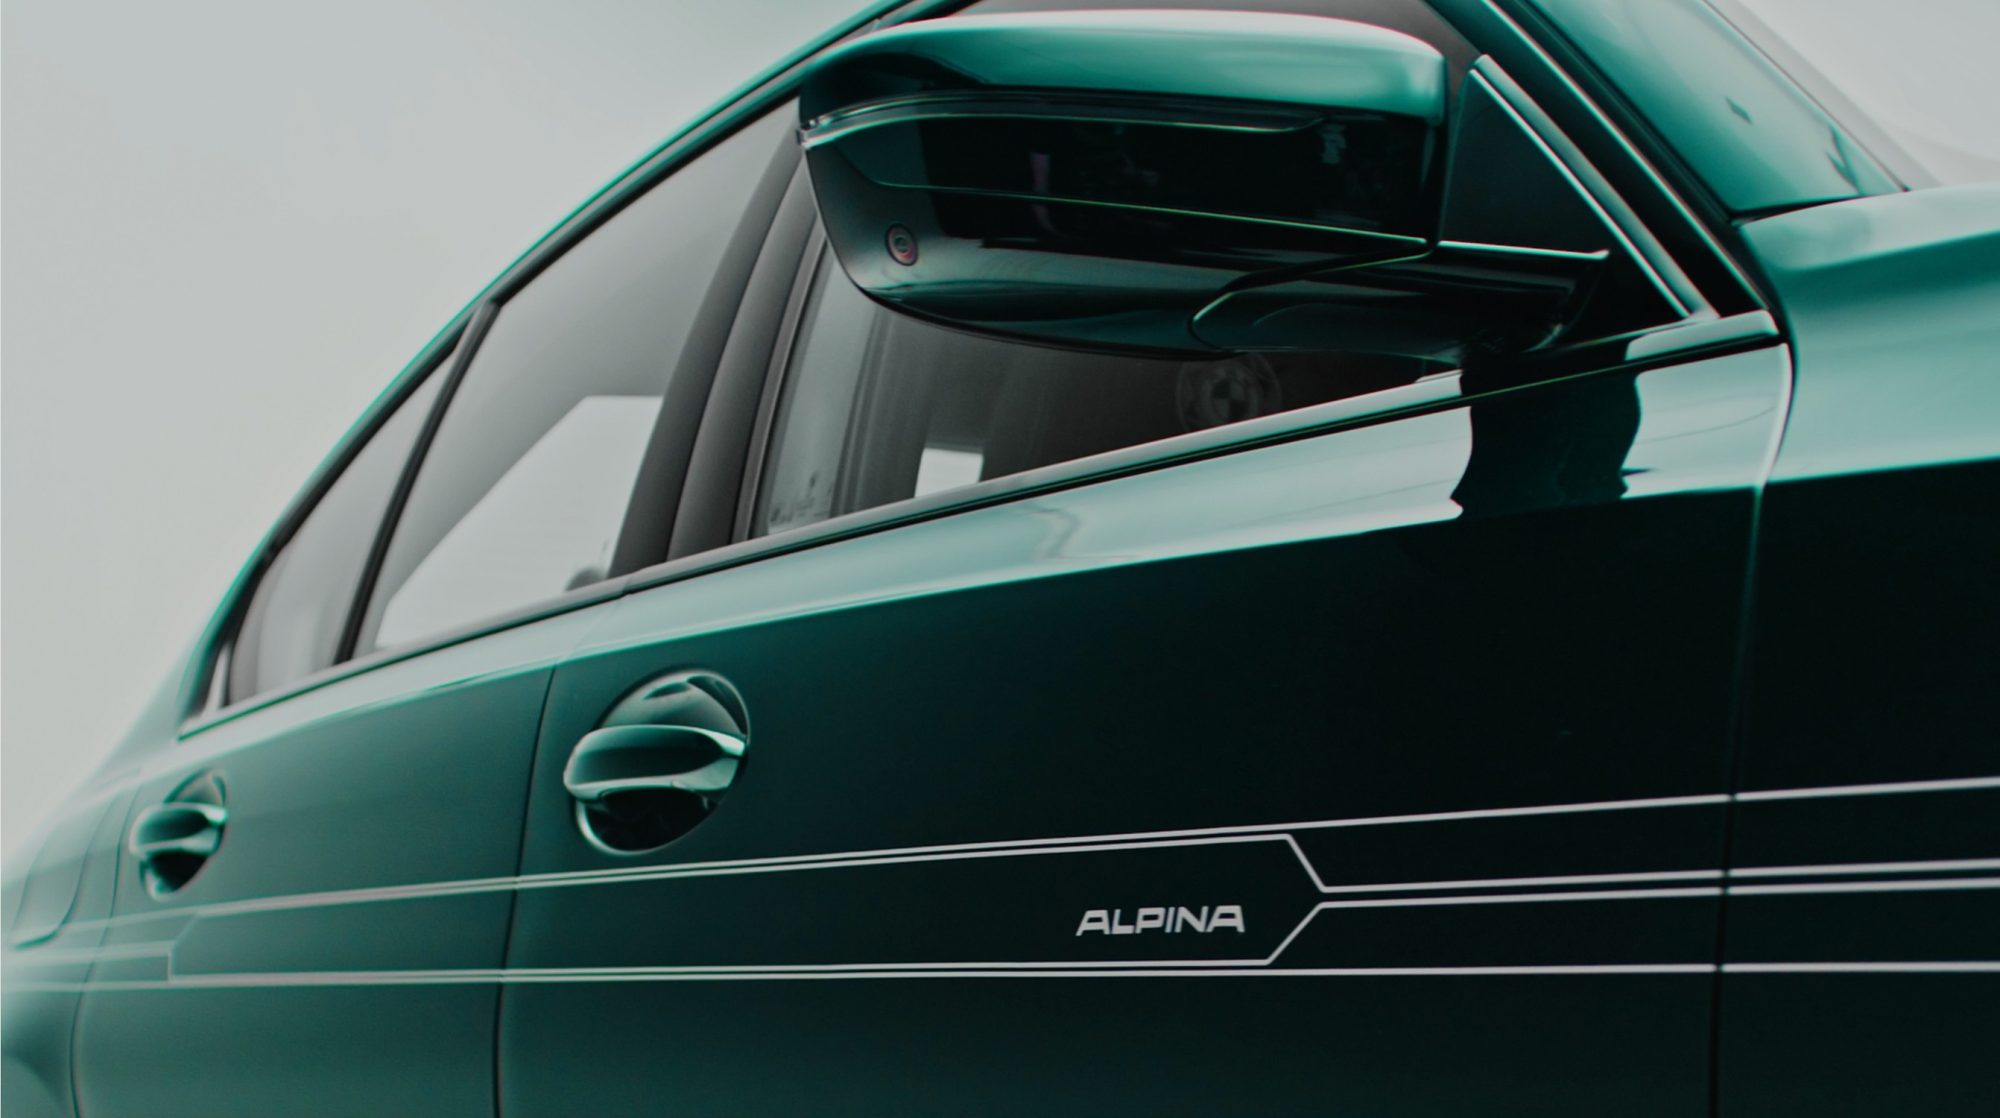 Alpina představuje model, kterým oslavuje 50leté působení automobilky BMW v Jihoafrické republice. Vznikne ho pouhých 5 kusů